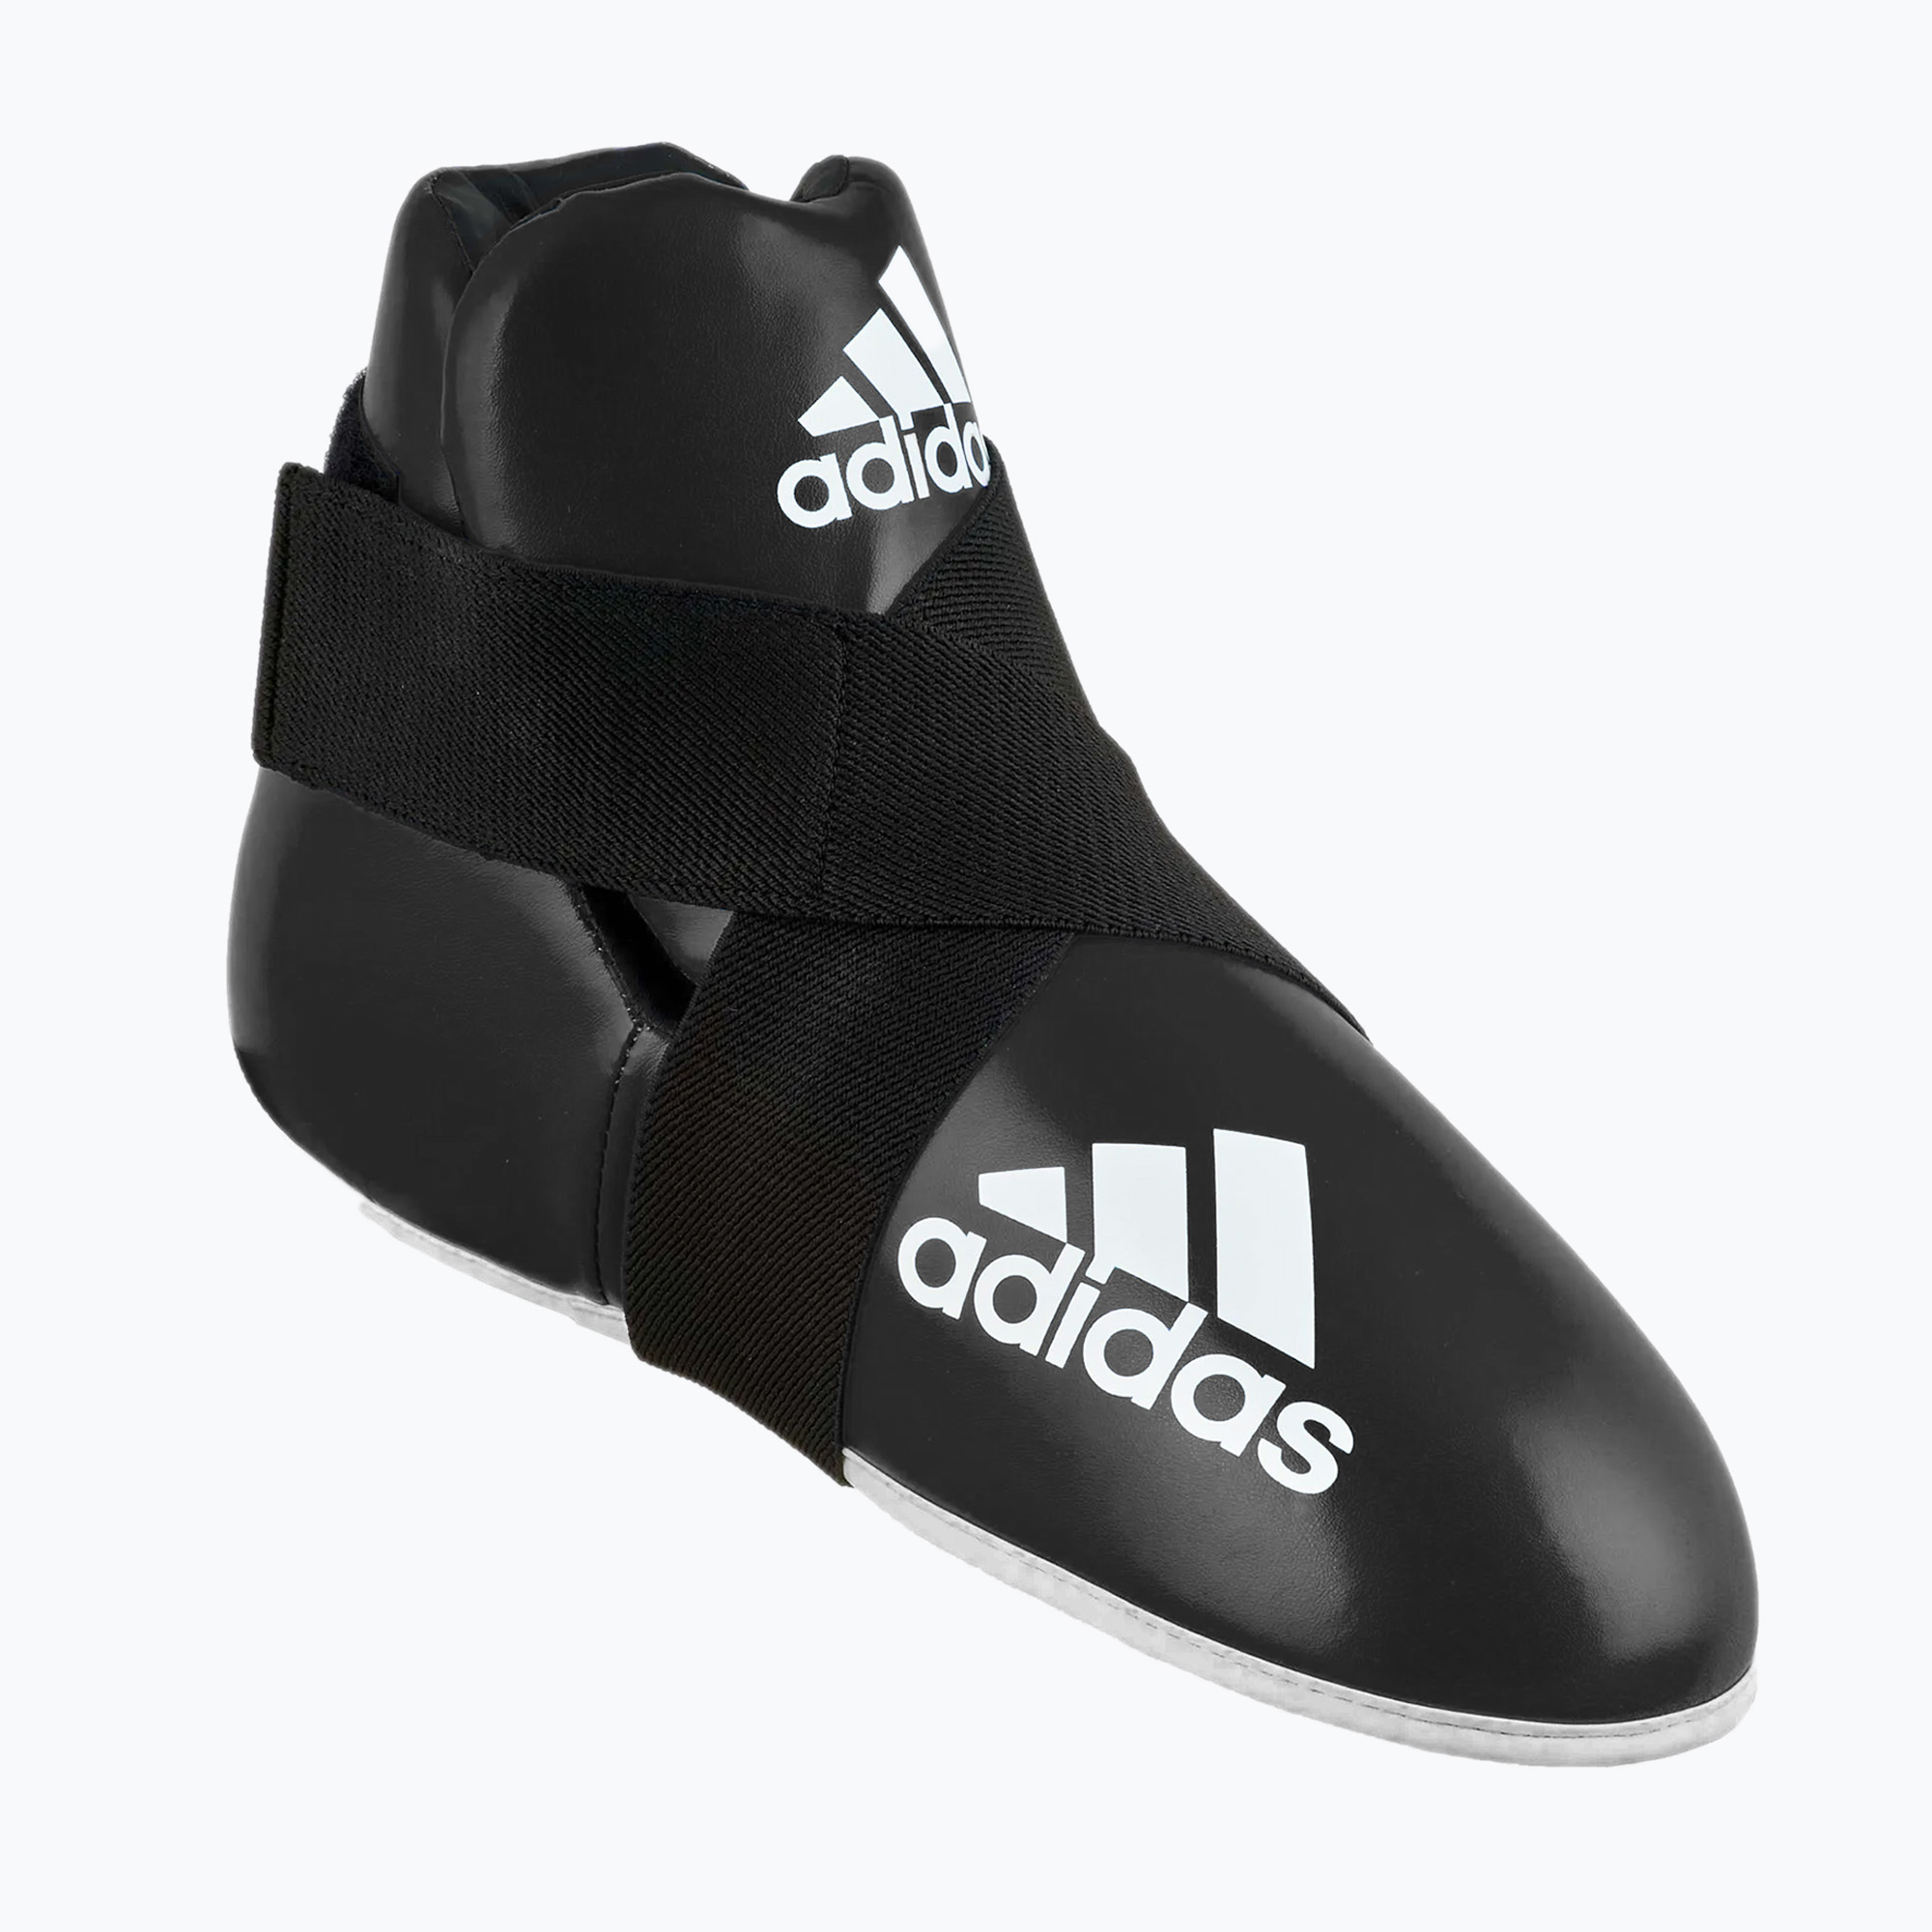 Apărători pentru picioare adidas Super Safety Kicks Adikbb100 negre ADIKBB100